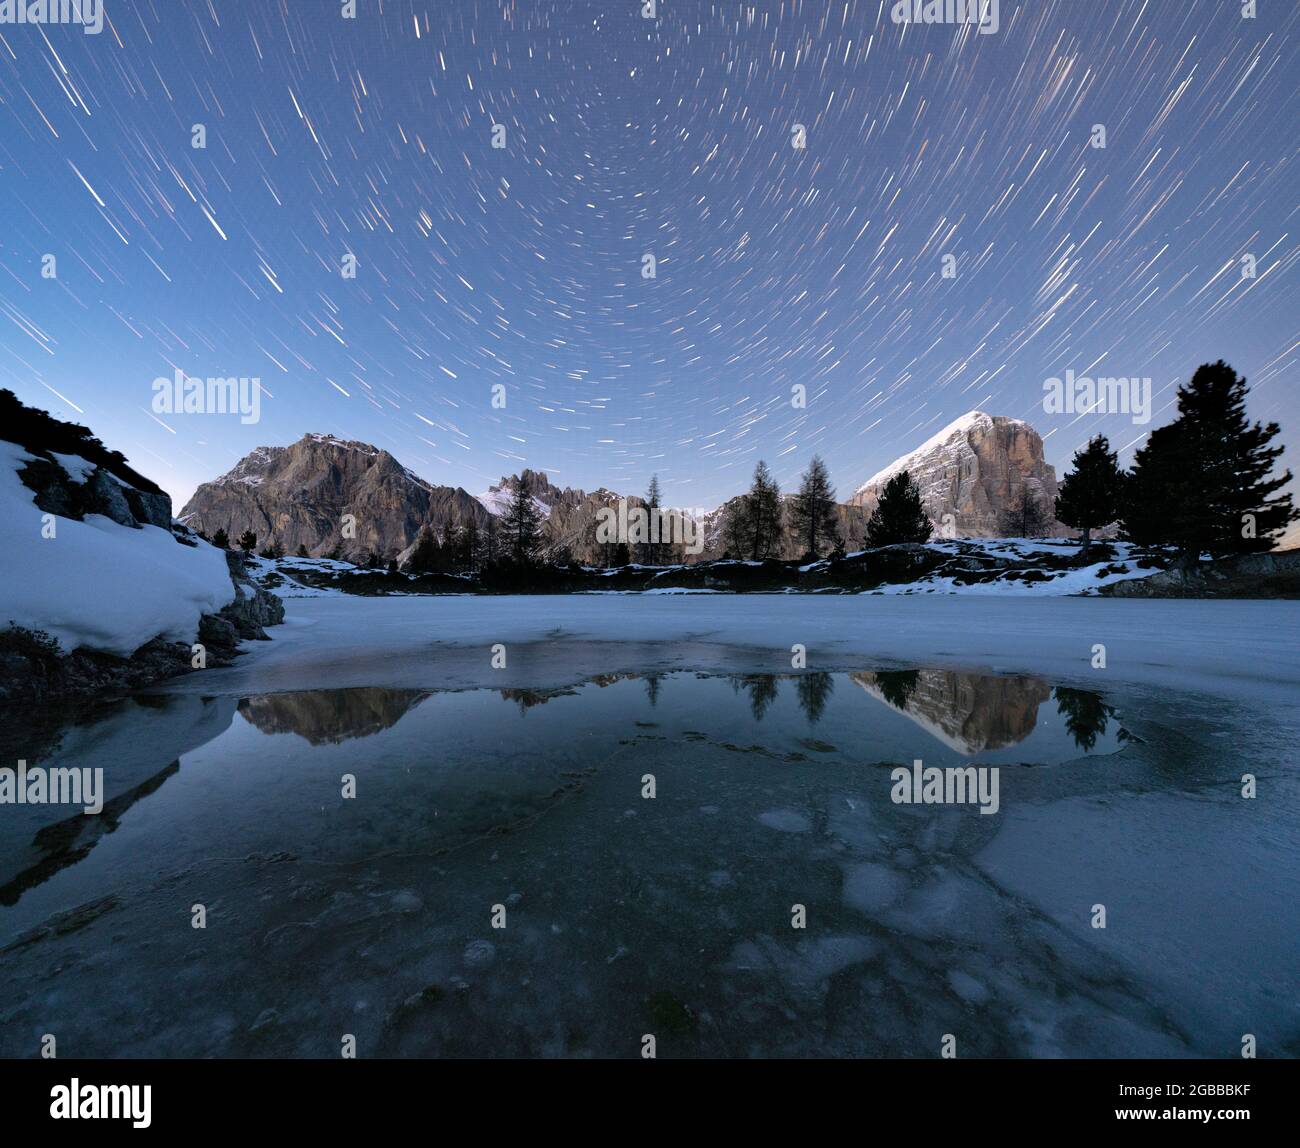 Sentiero polare nel cielo notturno sulle cime di Lagazuoi e Tofana di Rozes dal lago ghiacciato Limides, Dolomiti, Veneto, Italia, Europa Foto Stock